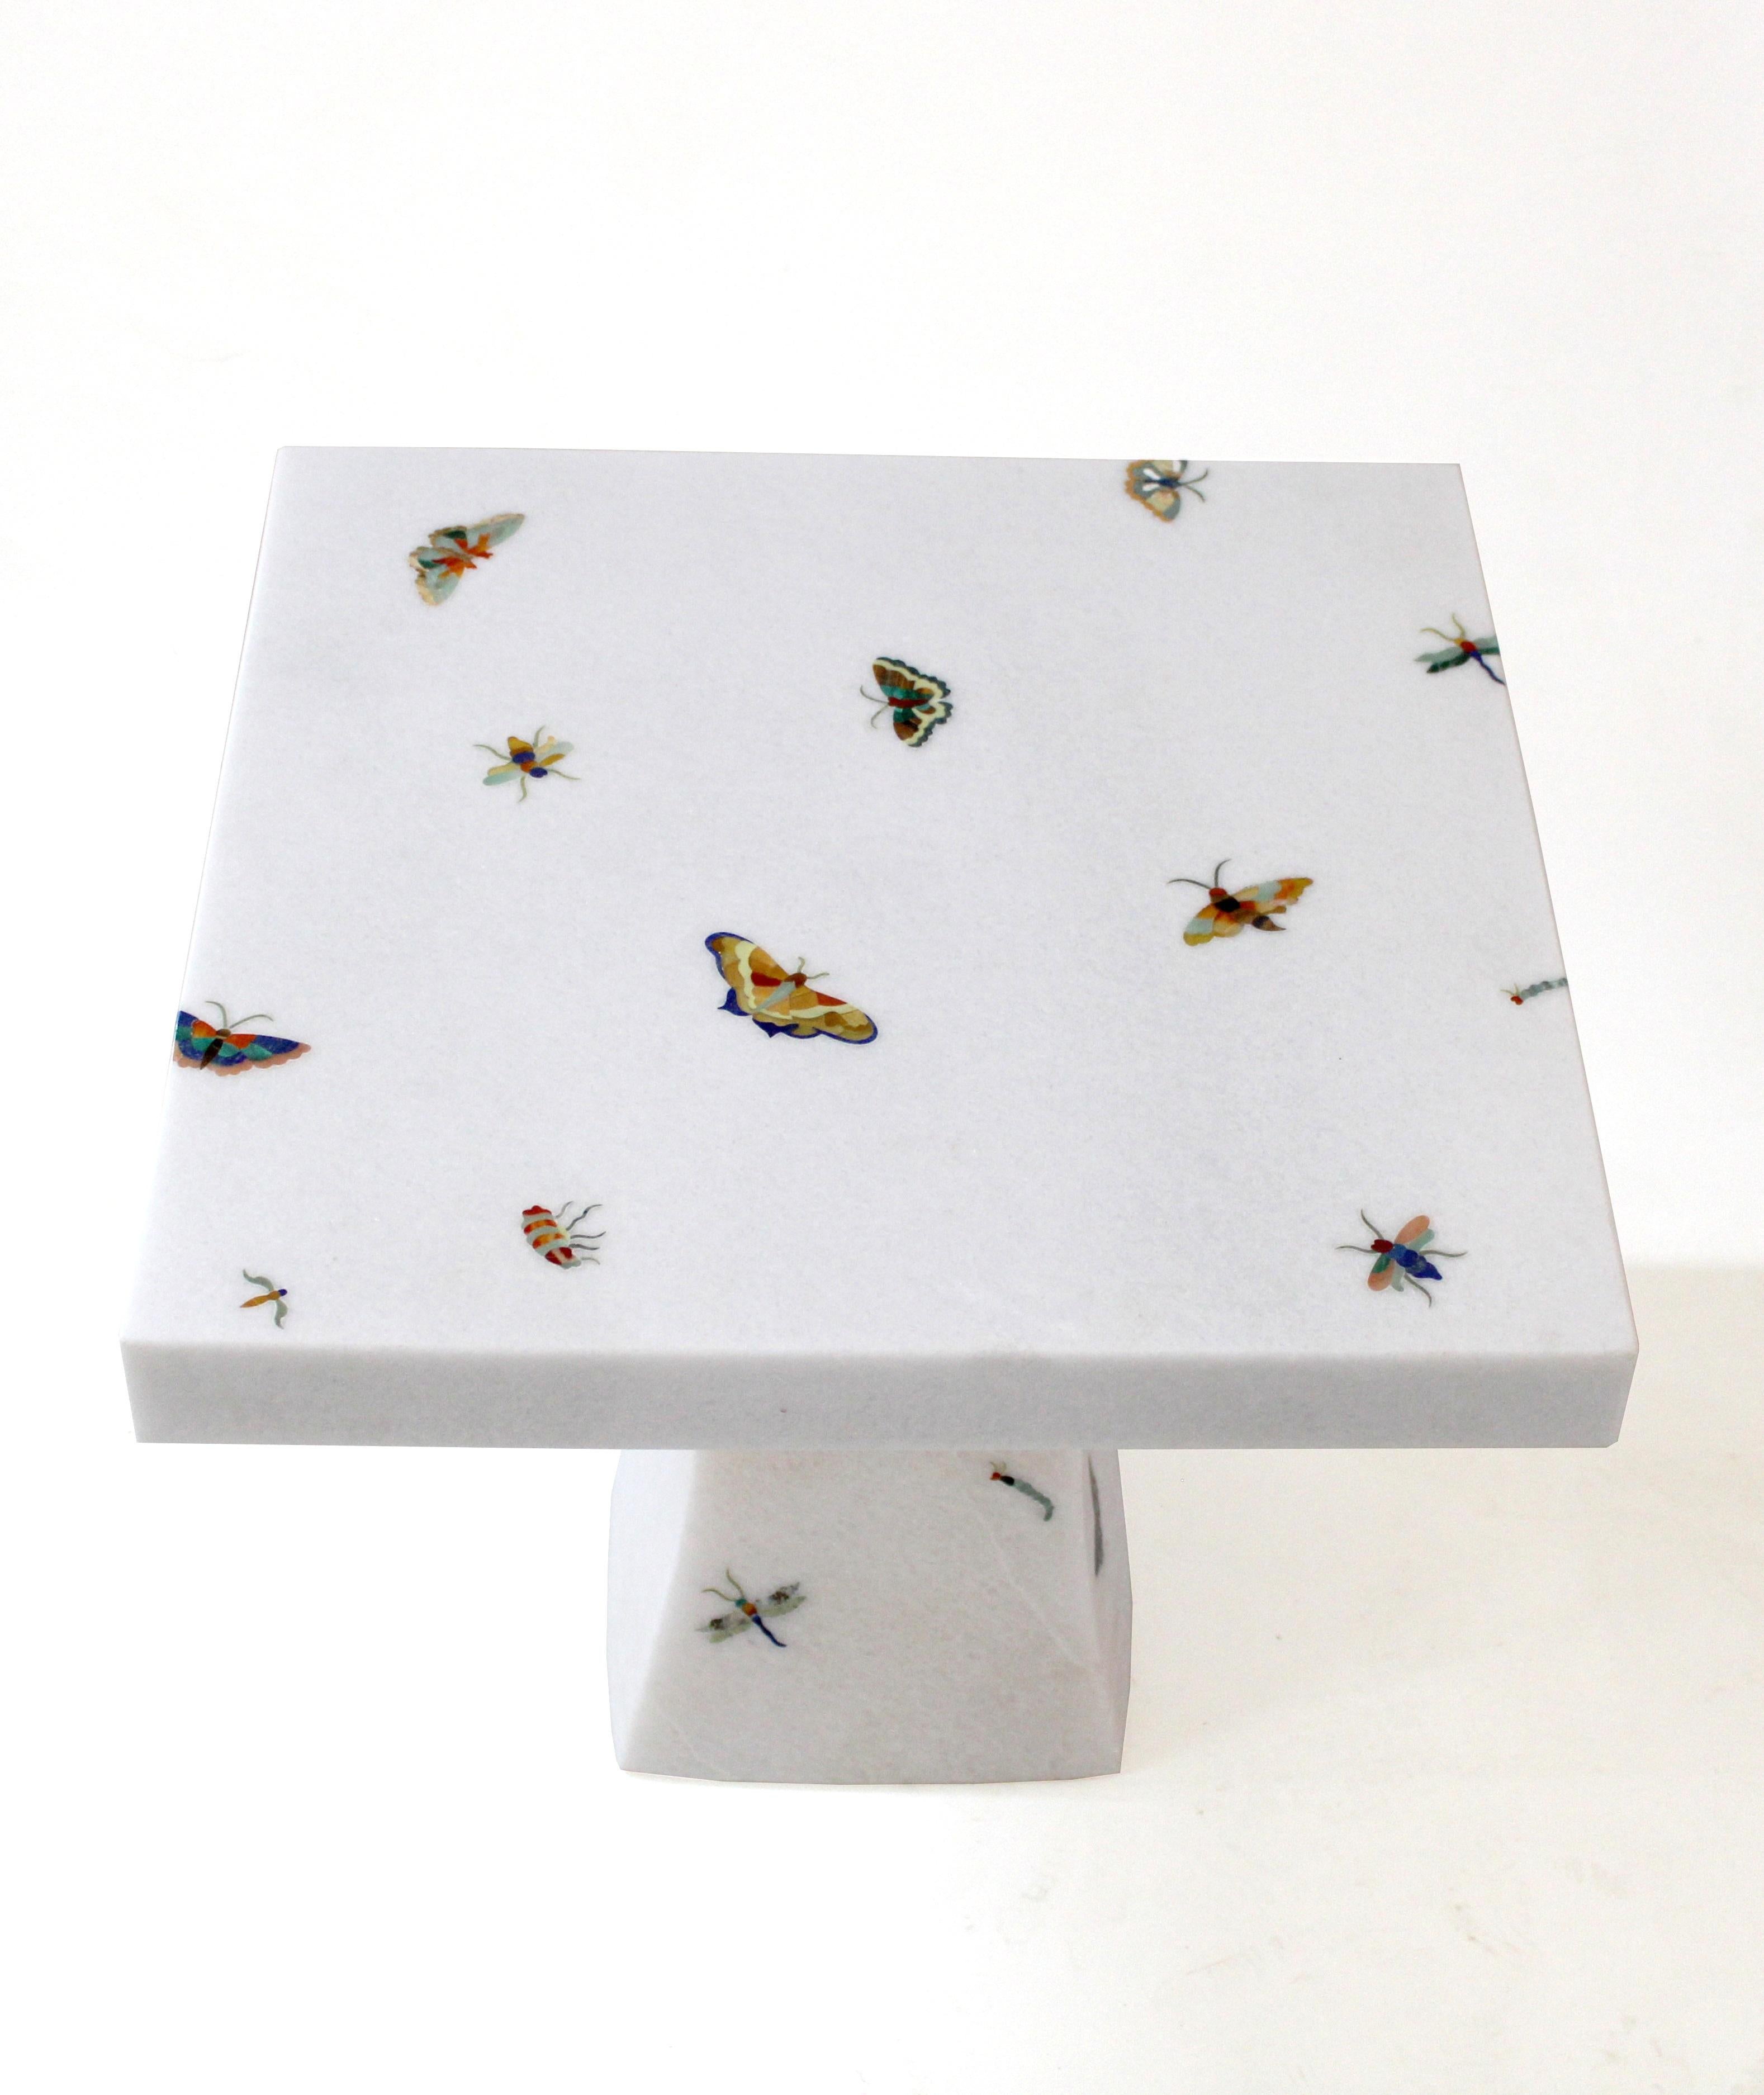 La table papillon fait partie de la collection Ornamenti. Des morceaux délicatement taillés d'agate, d'œil de tigre, de nacre et d'autres pierres semi-précieuses sont façonnés en motifs de papillon et soigneusement incrustés dans la pierre de base